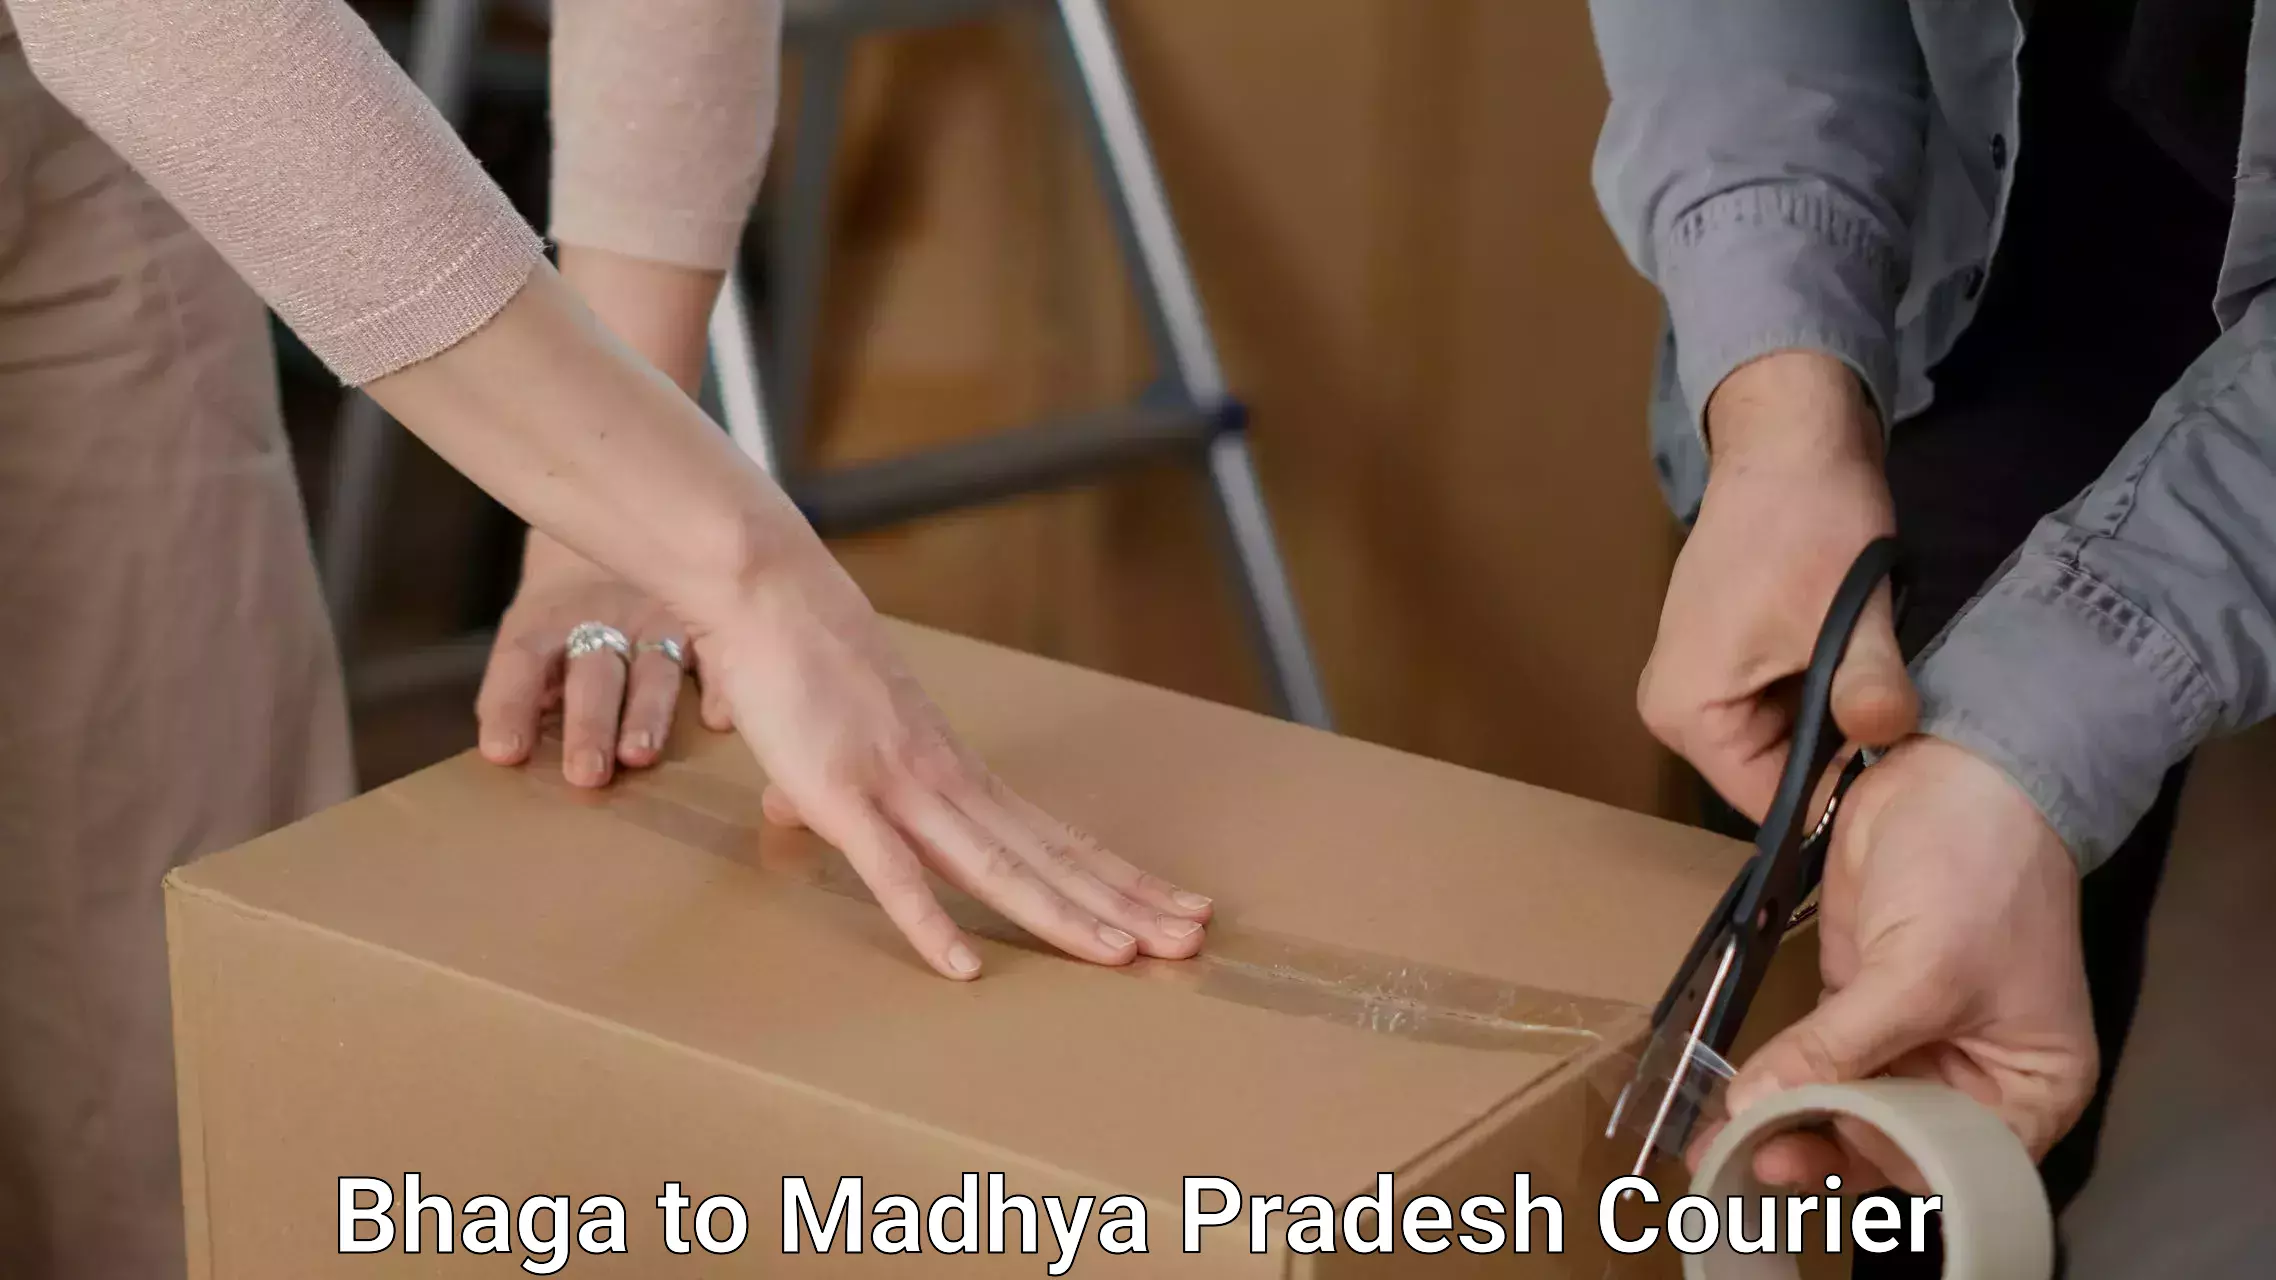 Furniture relocation experts Bhaga to Madhya Pradesh